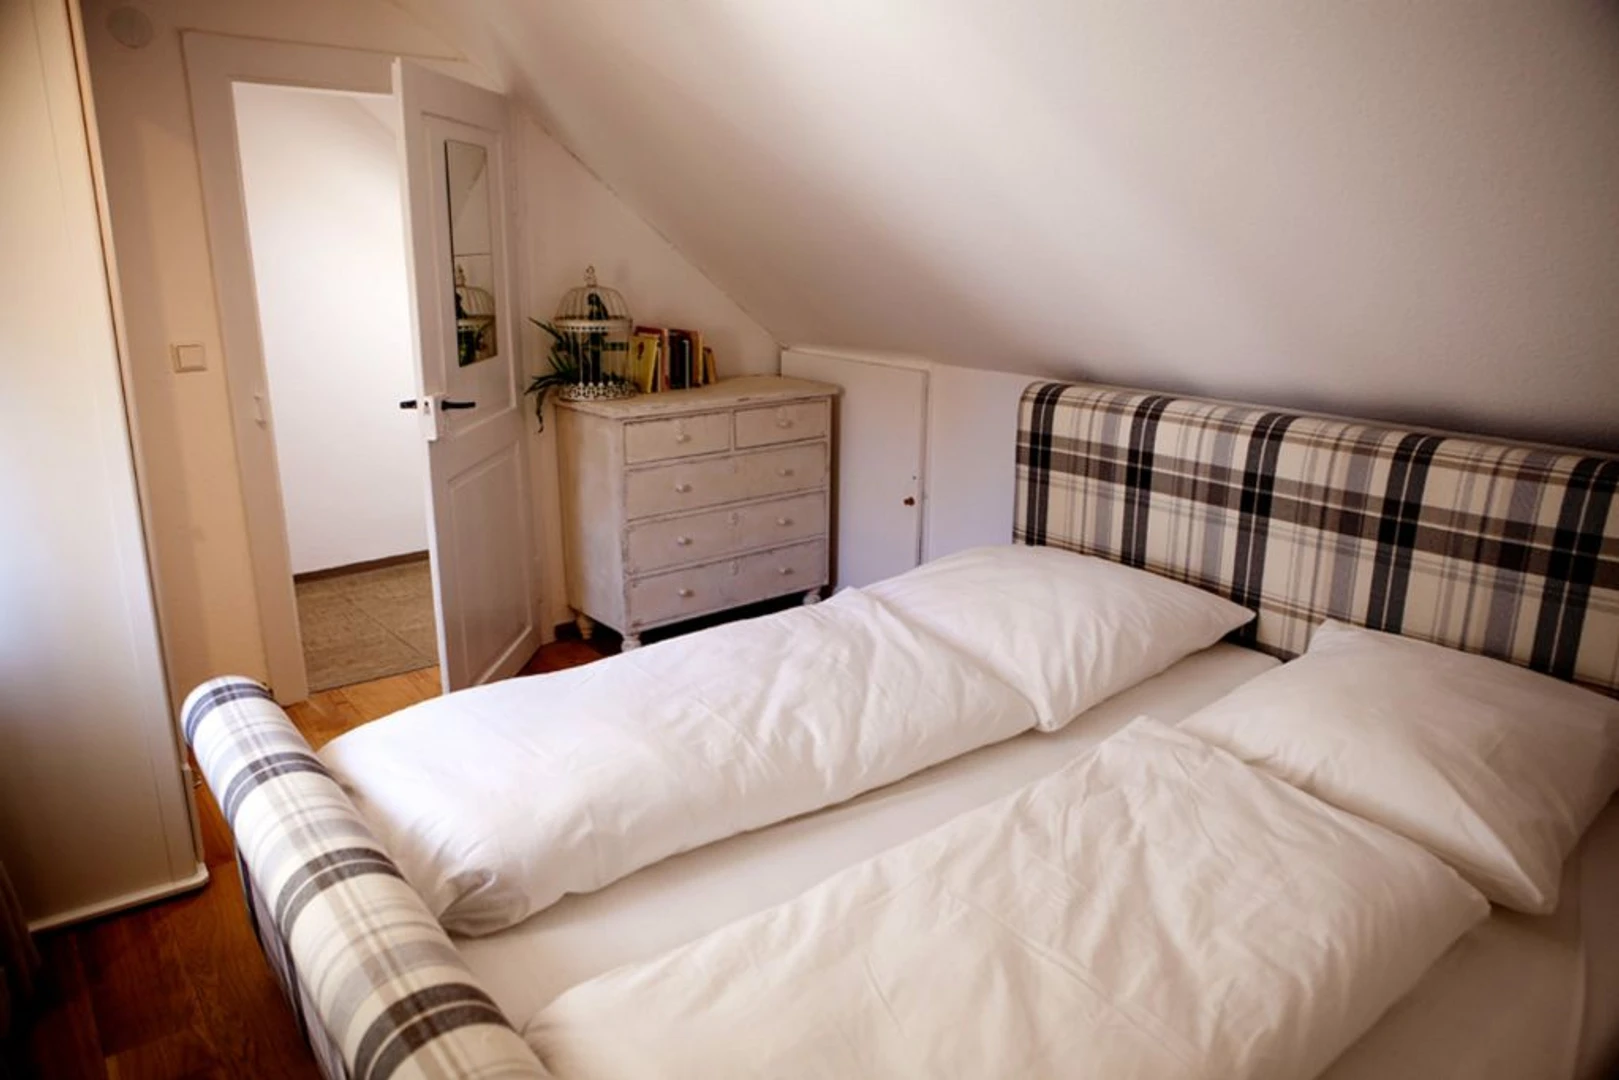 Freiburg Im Breisgau içinde 3 yatak odalı konaklama